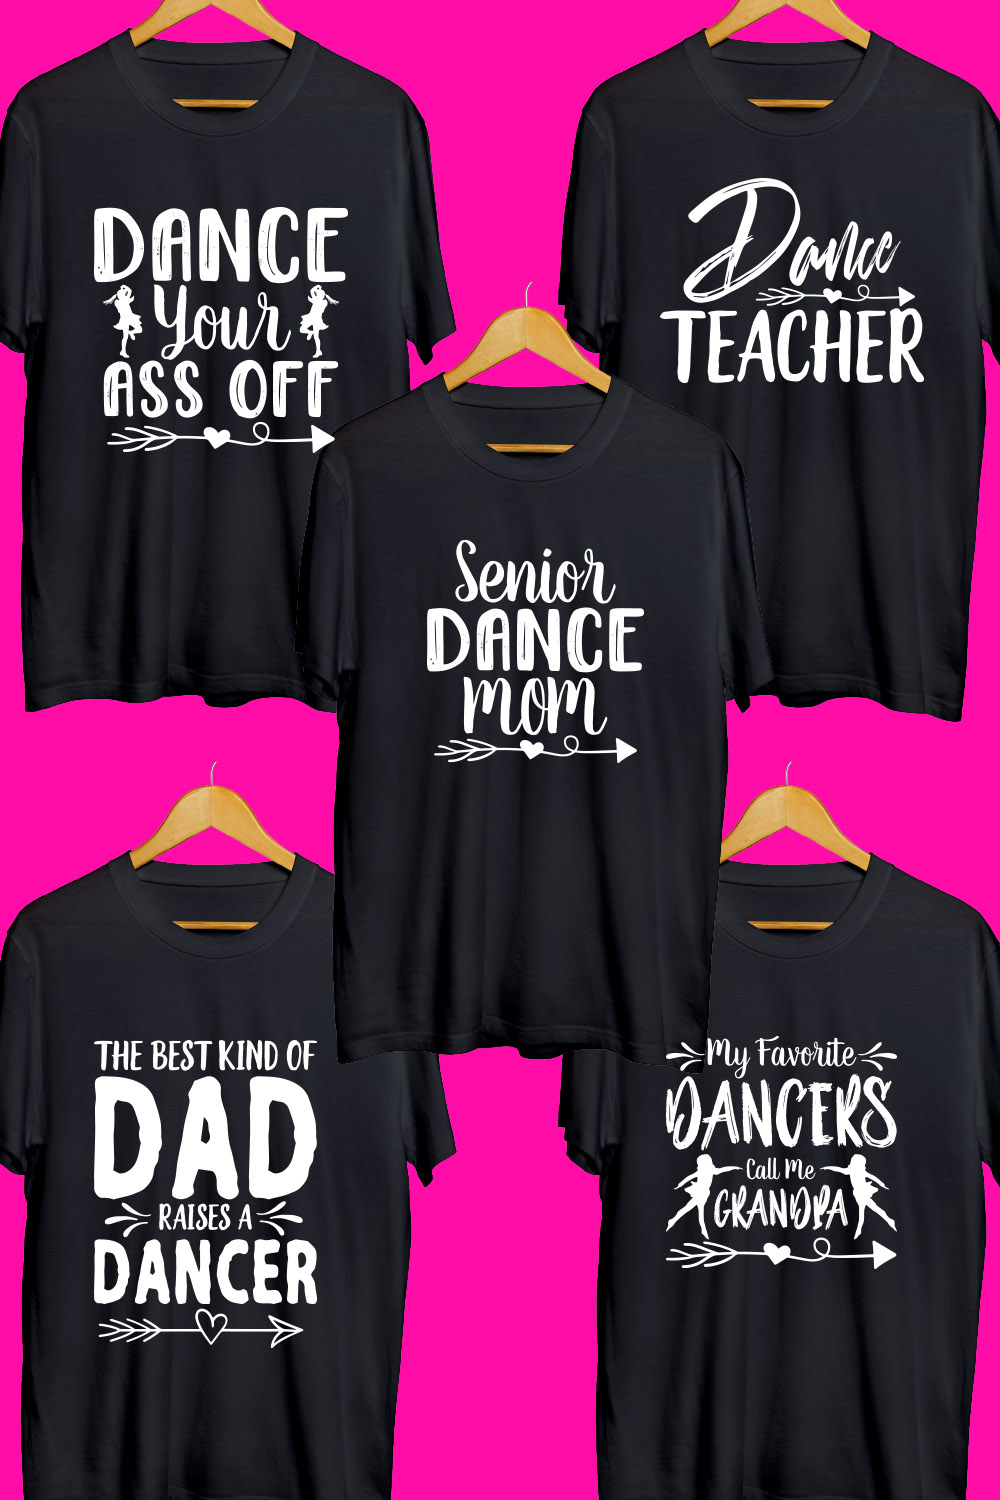 Dance SVG T Shirt Designs Bundle pinterest preview image.